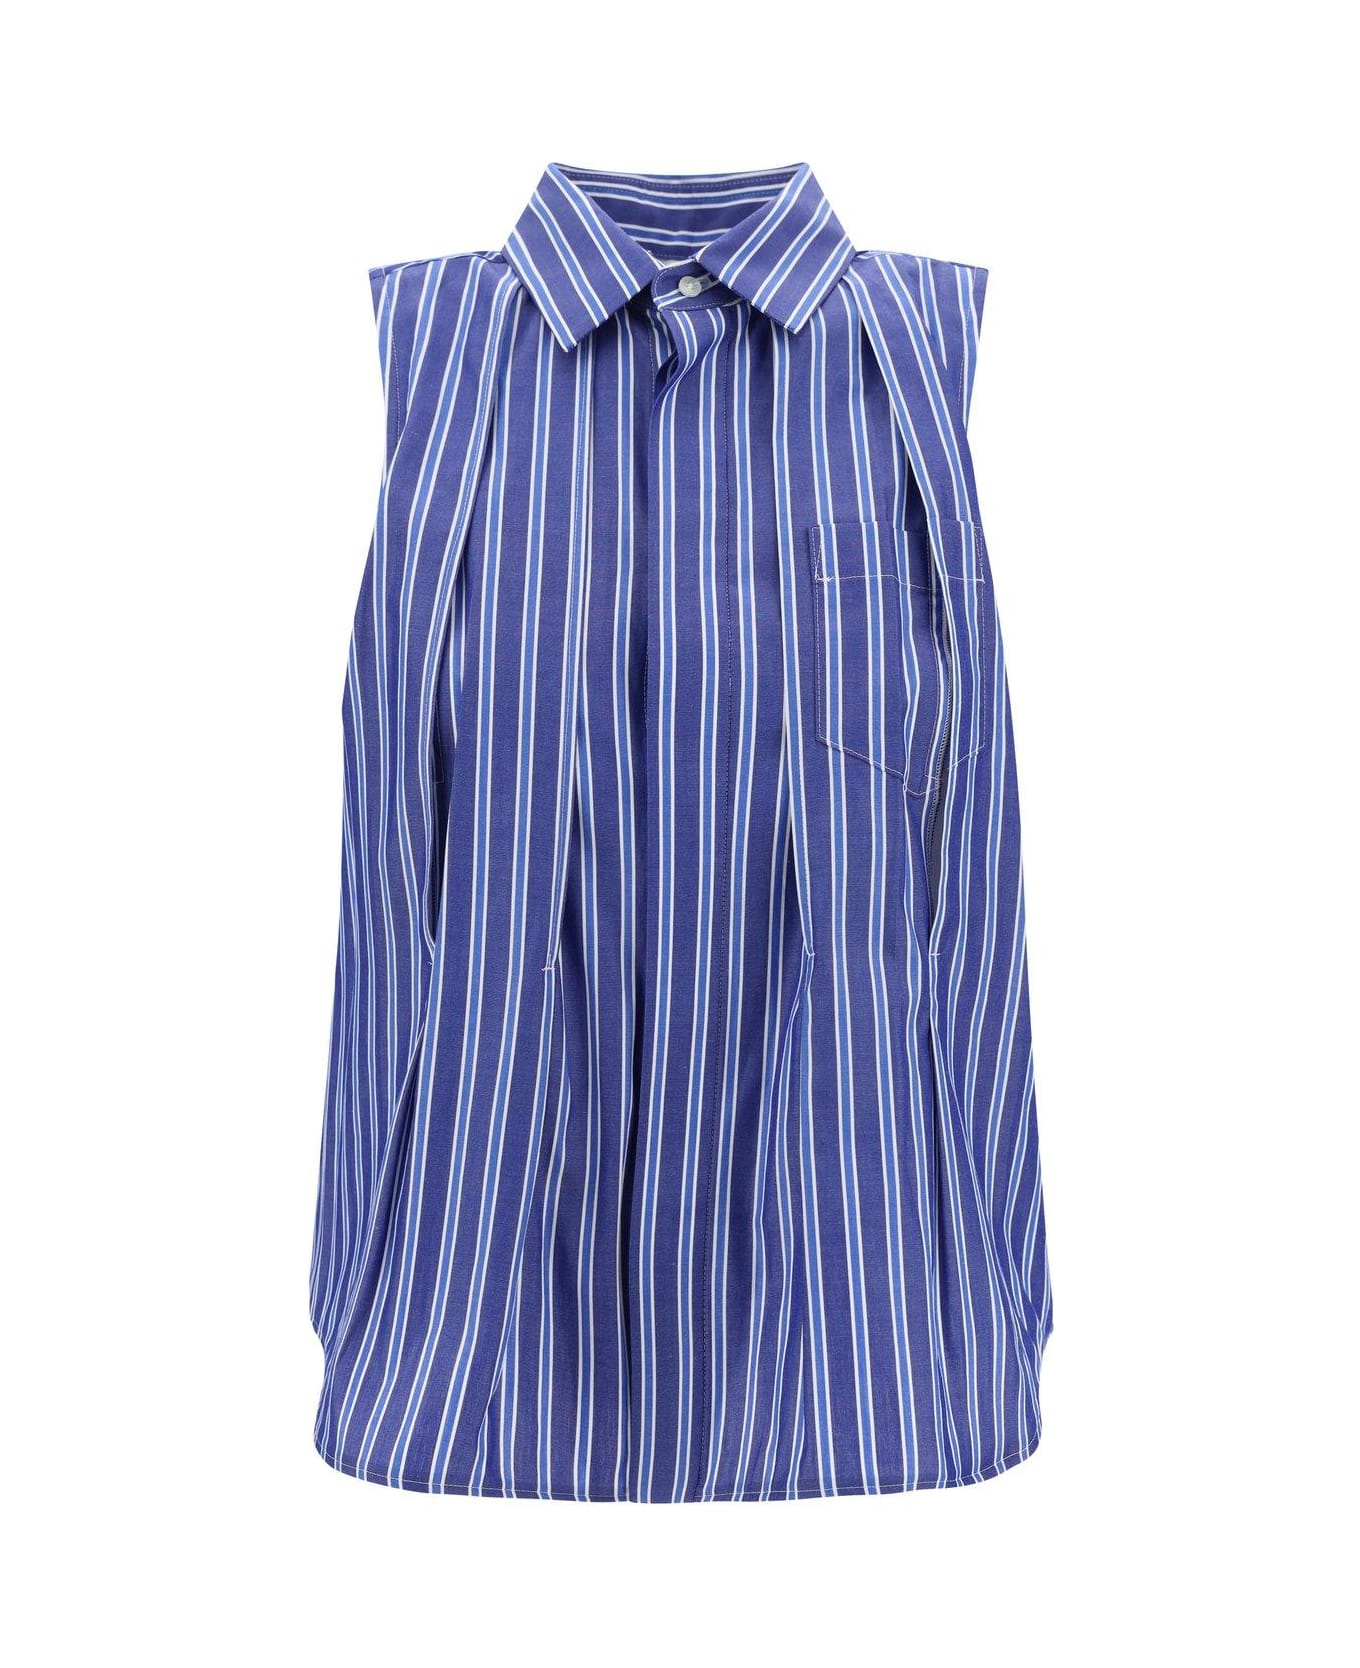 Sacai Striped Flared Hem Sleeveless Shirt - Blue